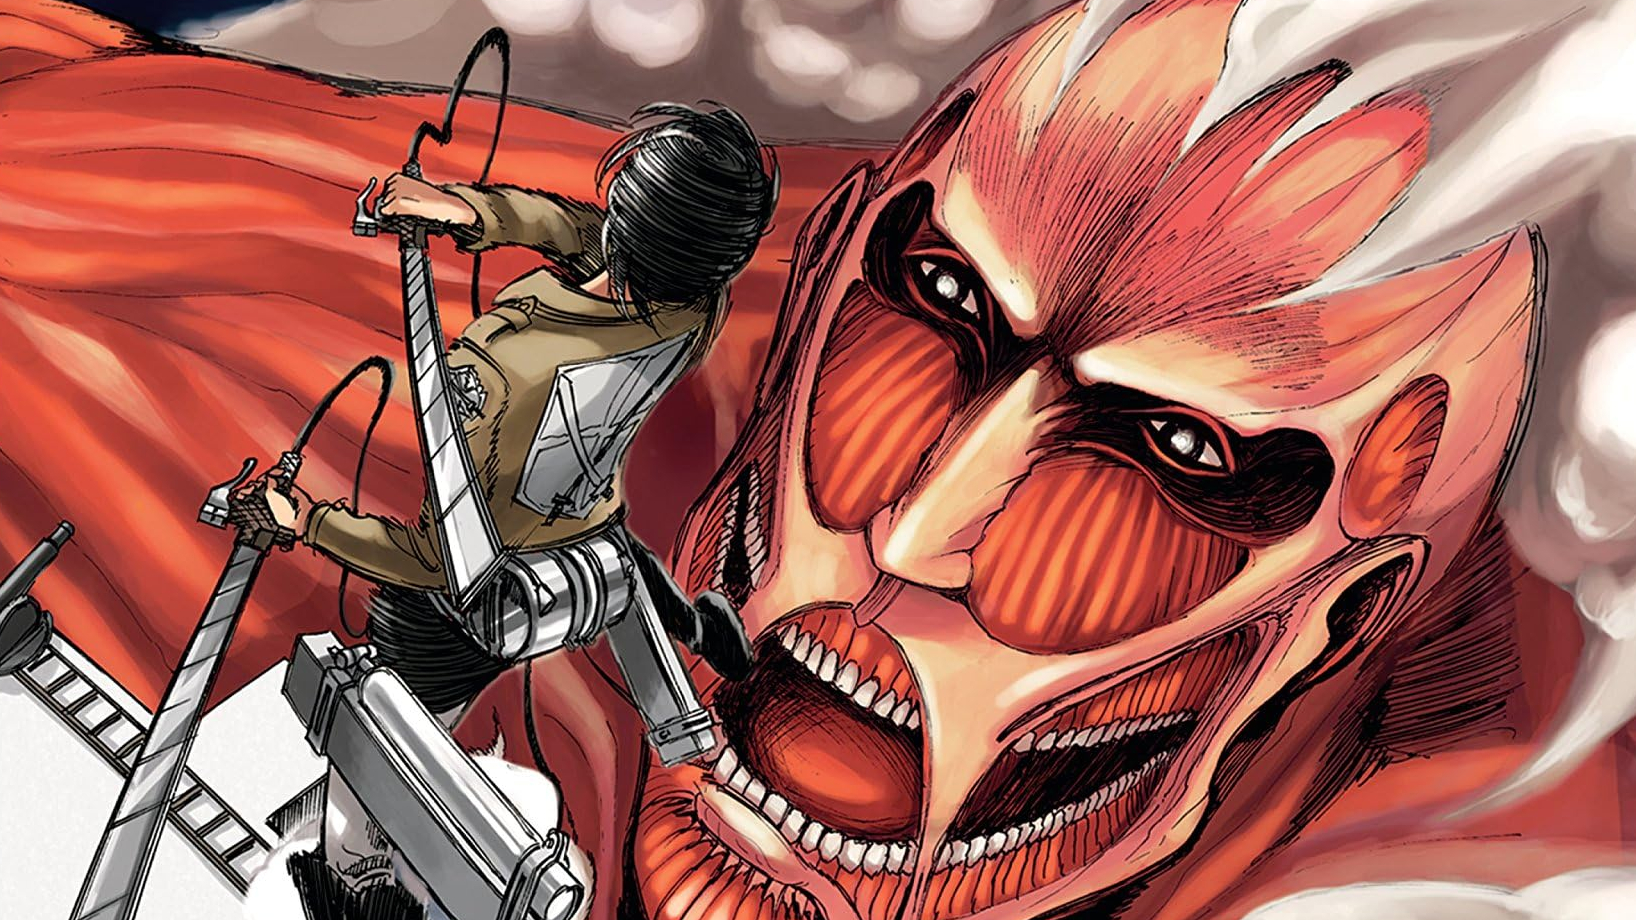 Panini Mangas Brasil - Em Ataque dos Titãs temos dois personagens que são  verdadeiras máquinas de combate! Mikasa Arckmann e Levi Rivaille! 💥💥 Qual  dos dois é o seu favorito? 🤔🤔 Artes